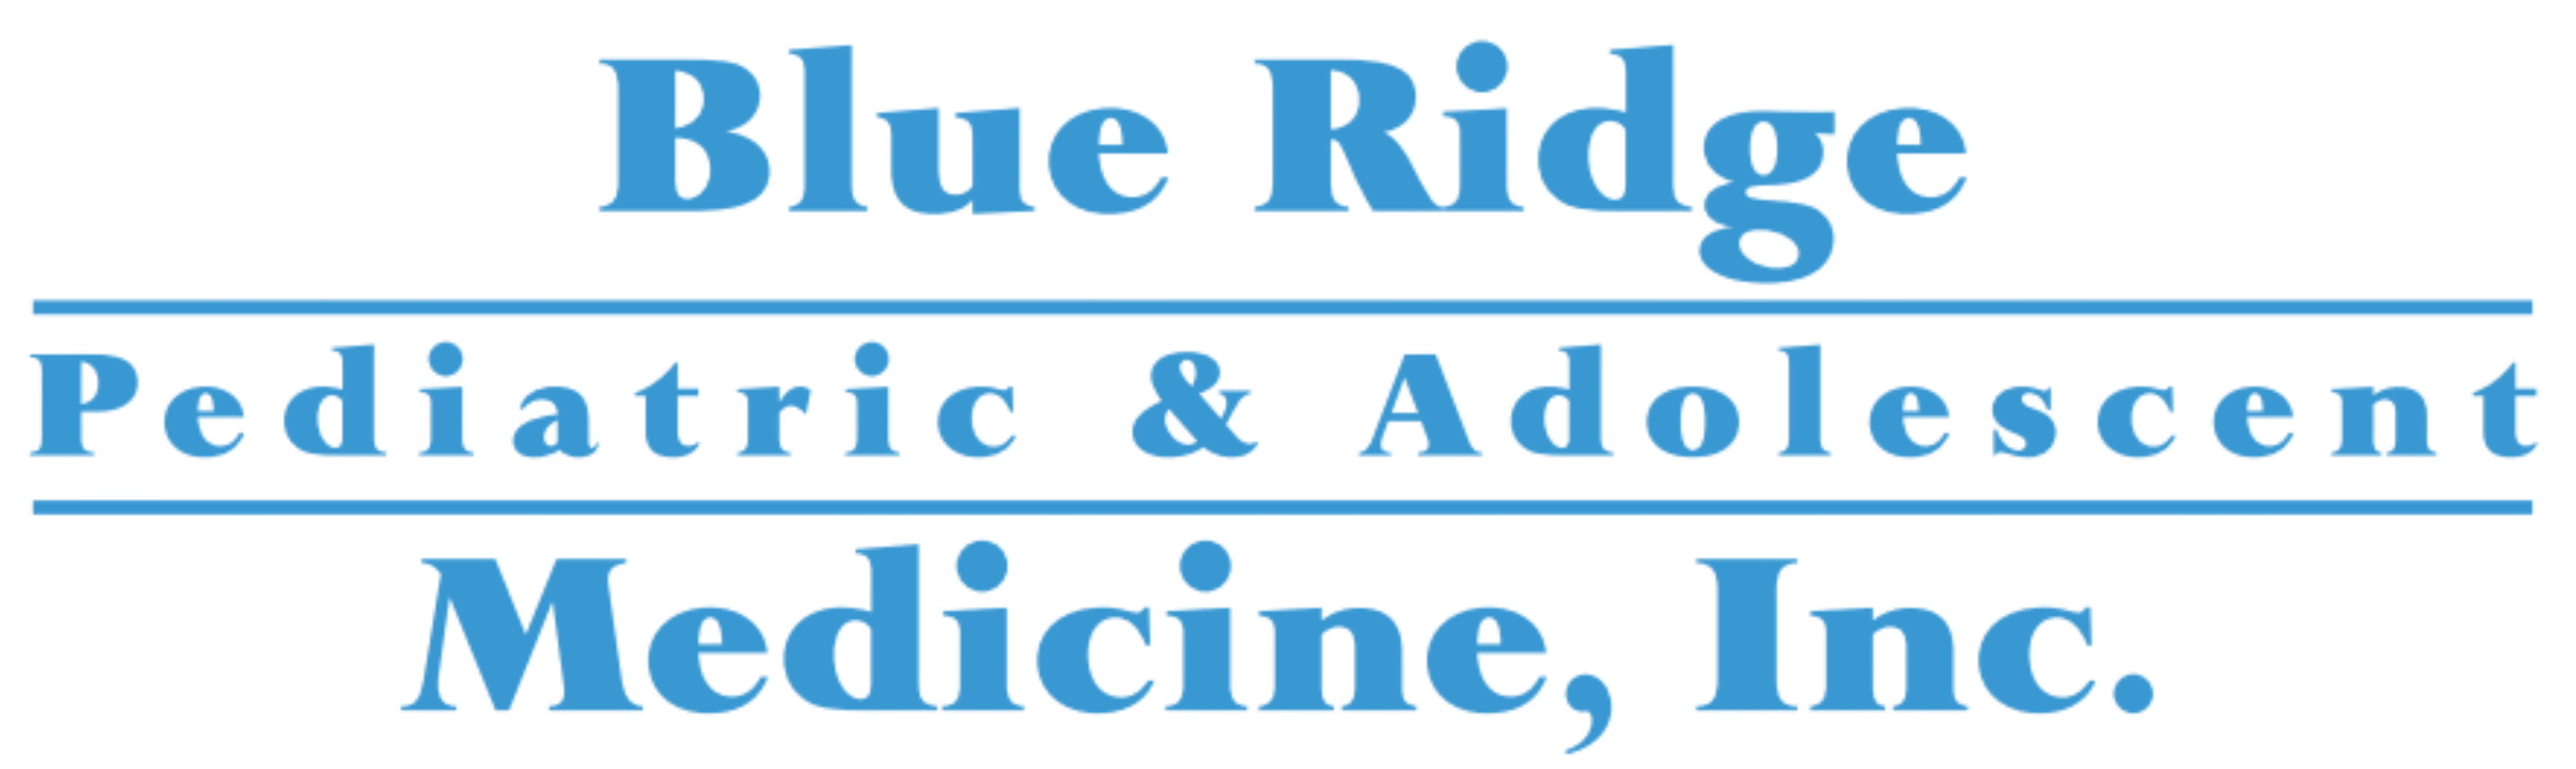 Blue Ridge Pediatric & Adolescent Medicine, Inc.